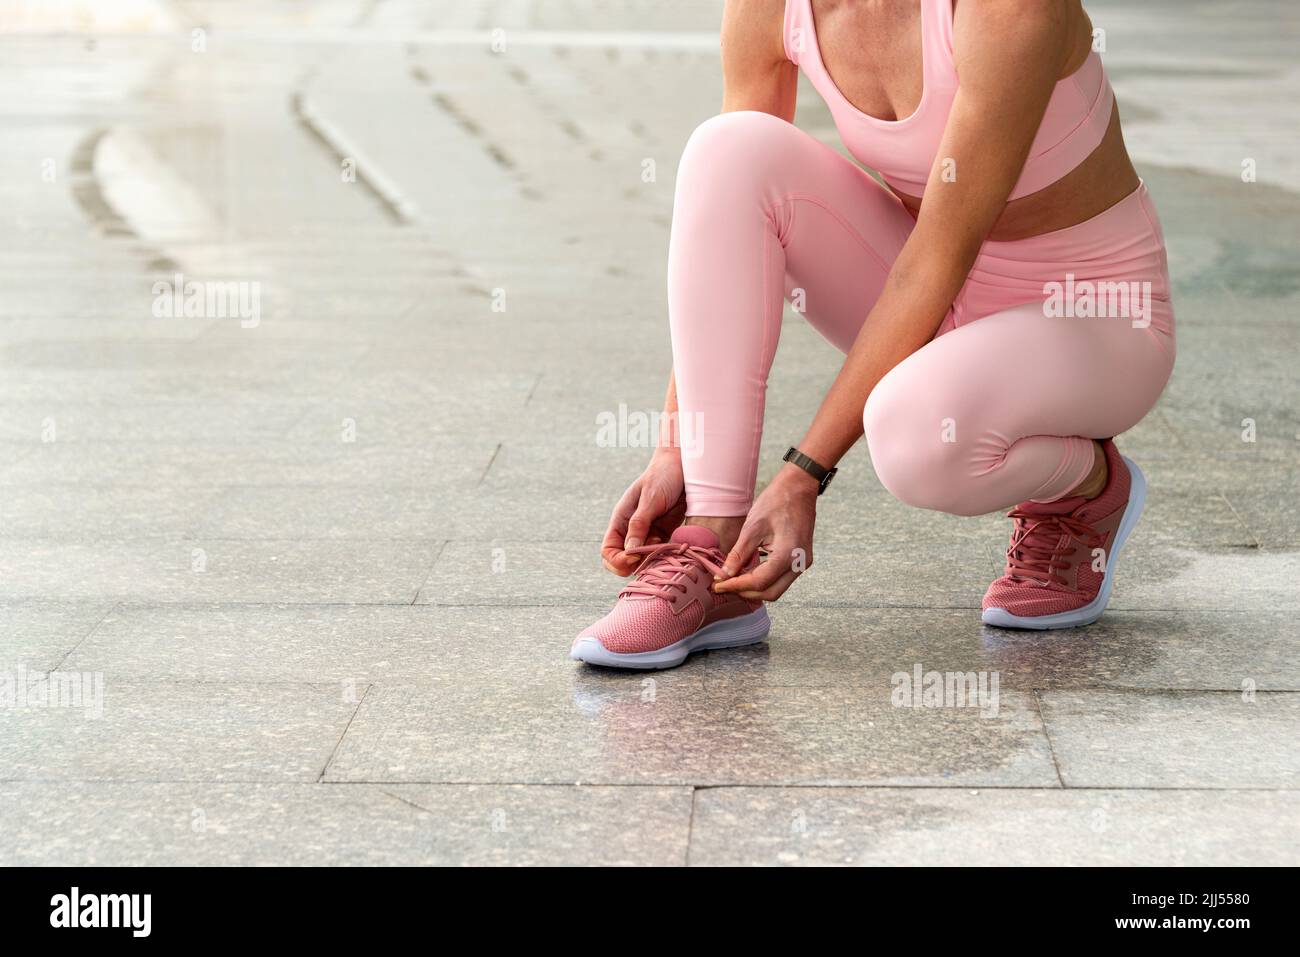 Mujer atando sus zapatos antes de correr o hacer ejercicio Foto de stock